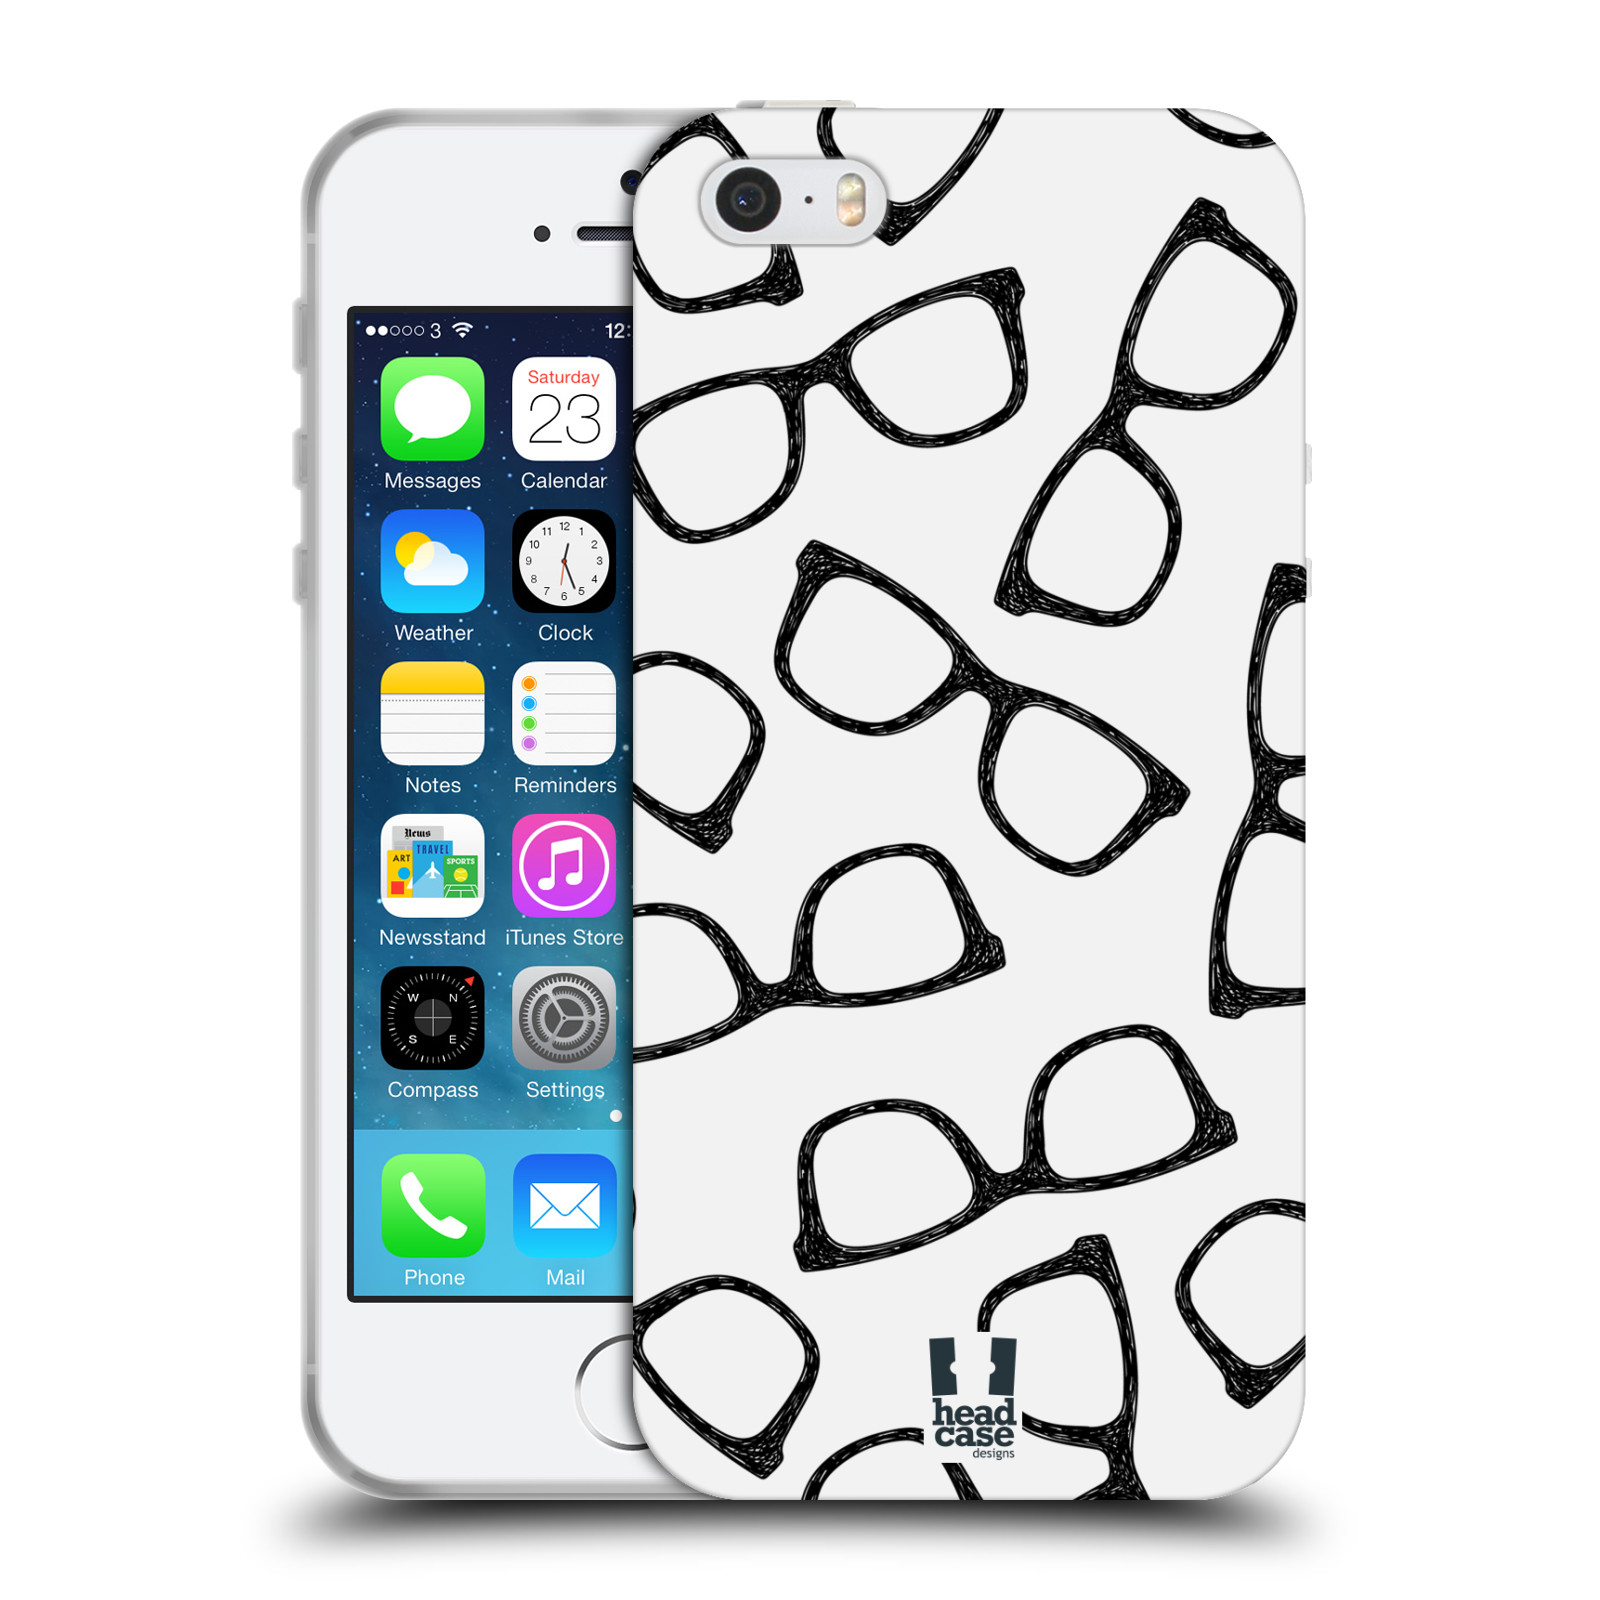 Silikonové pouzdro na mobil Apple iPhone 5, 5S, SE - Head Case - HIPSTER BRÝLE (Silikonový kryt, obal, pouzdro na mobilní telefon Apple iPhone SE, 5S a 5 s motivem HIPSTER BRÝLE)